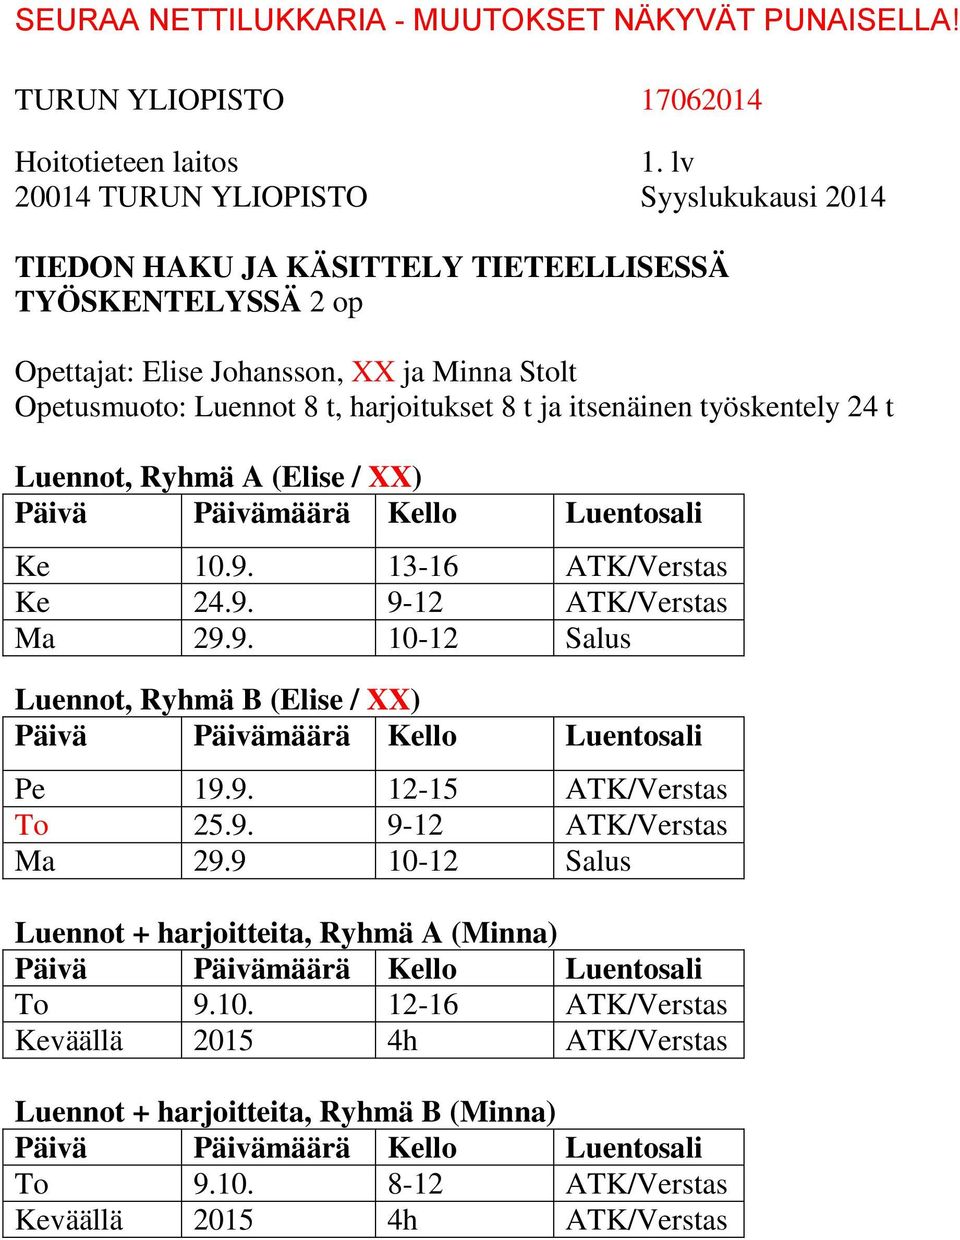 9. 10-12 Salus Luennot, Ryhmä B (Elise / XX) Pe 19.9. 12-15 ATK/Verstas To 25.9. 9-12 ATK/Verstas Ma 29.